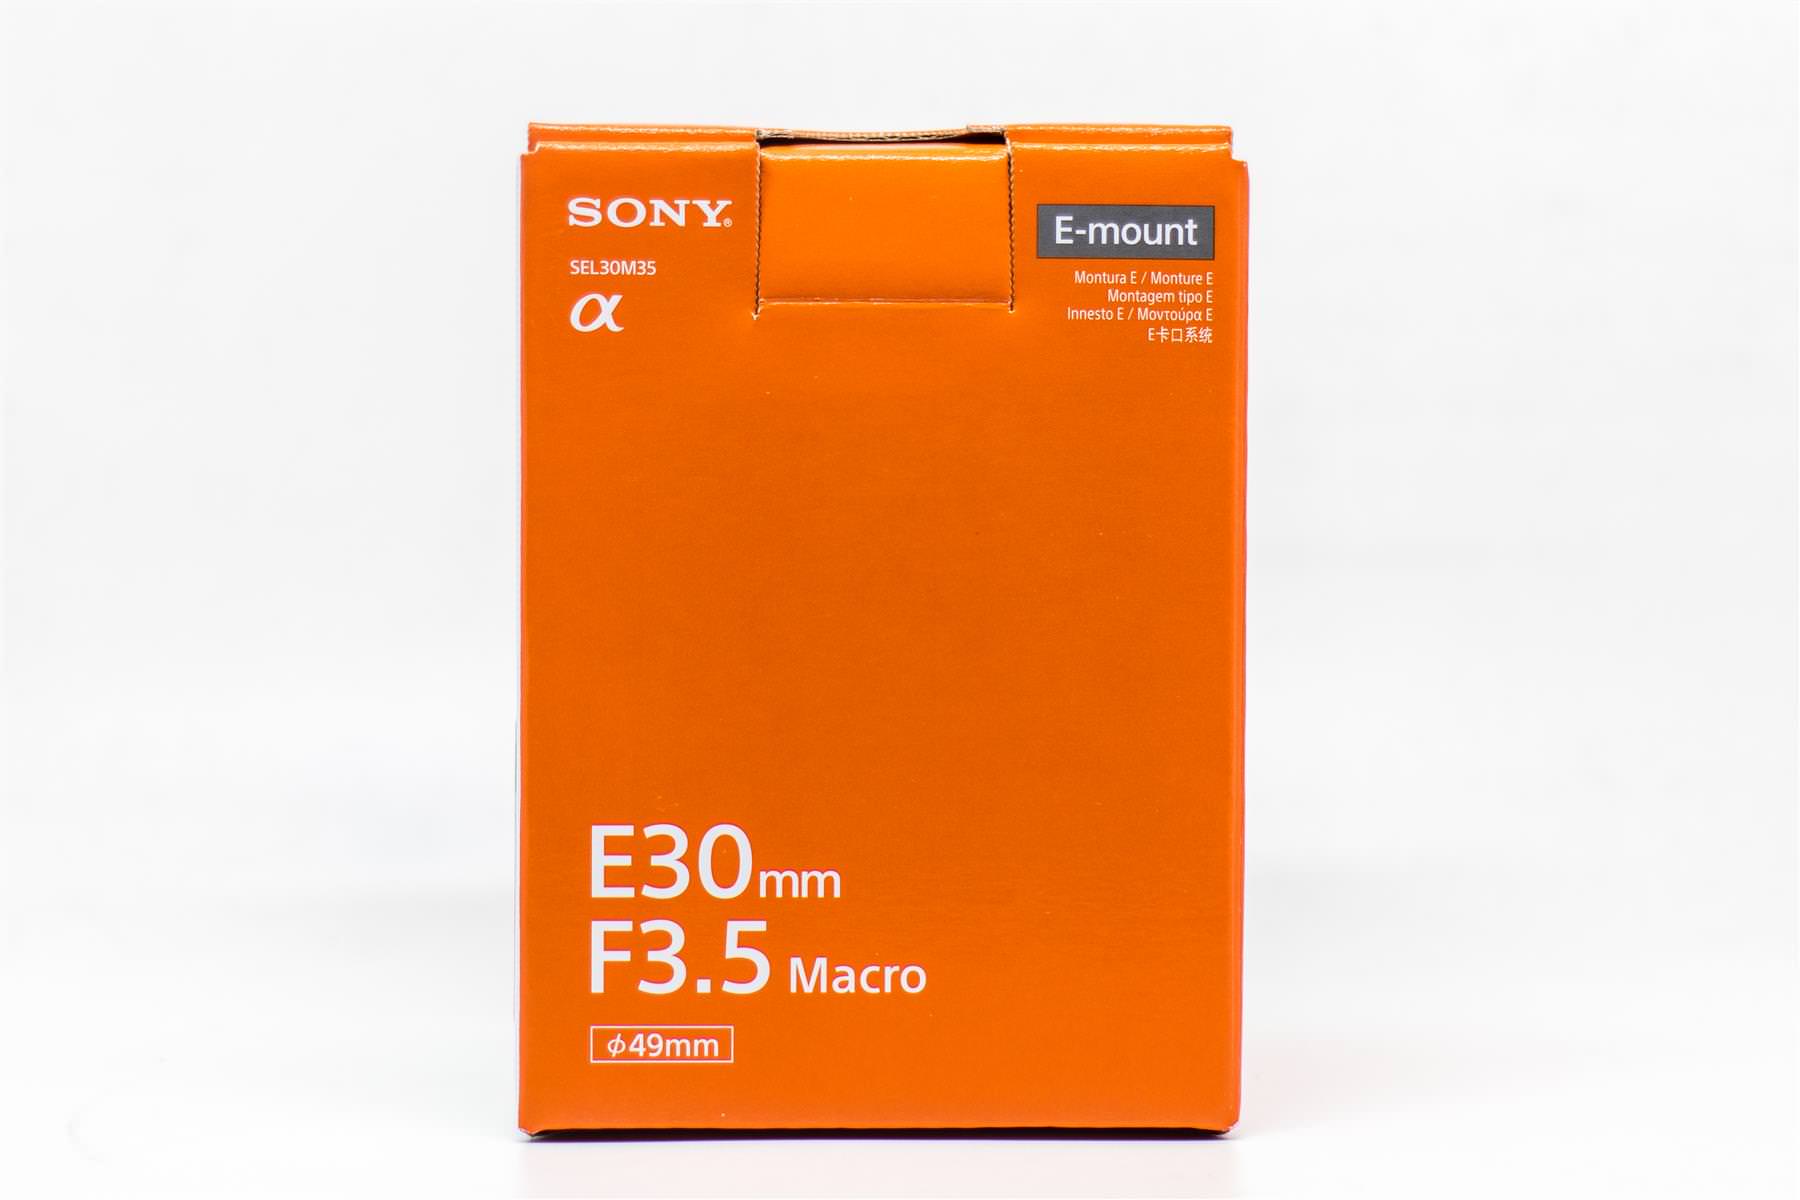 [比攝影79] Sony A6000 / A6300 /A6500 通用微距鏡頭 SEL30M35 簡單開箱